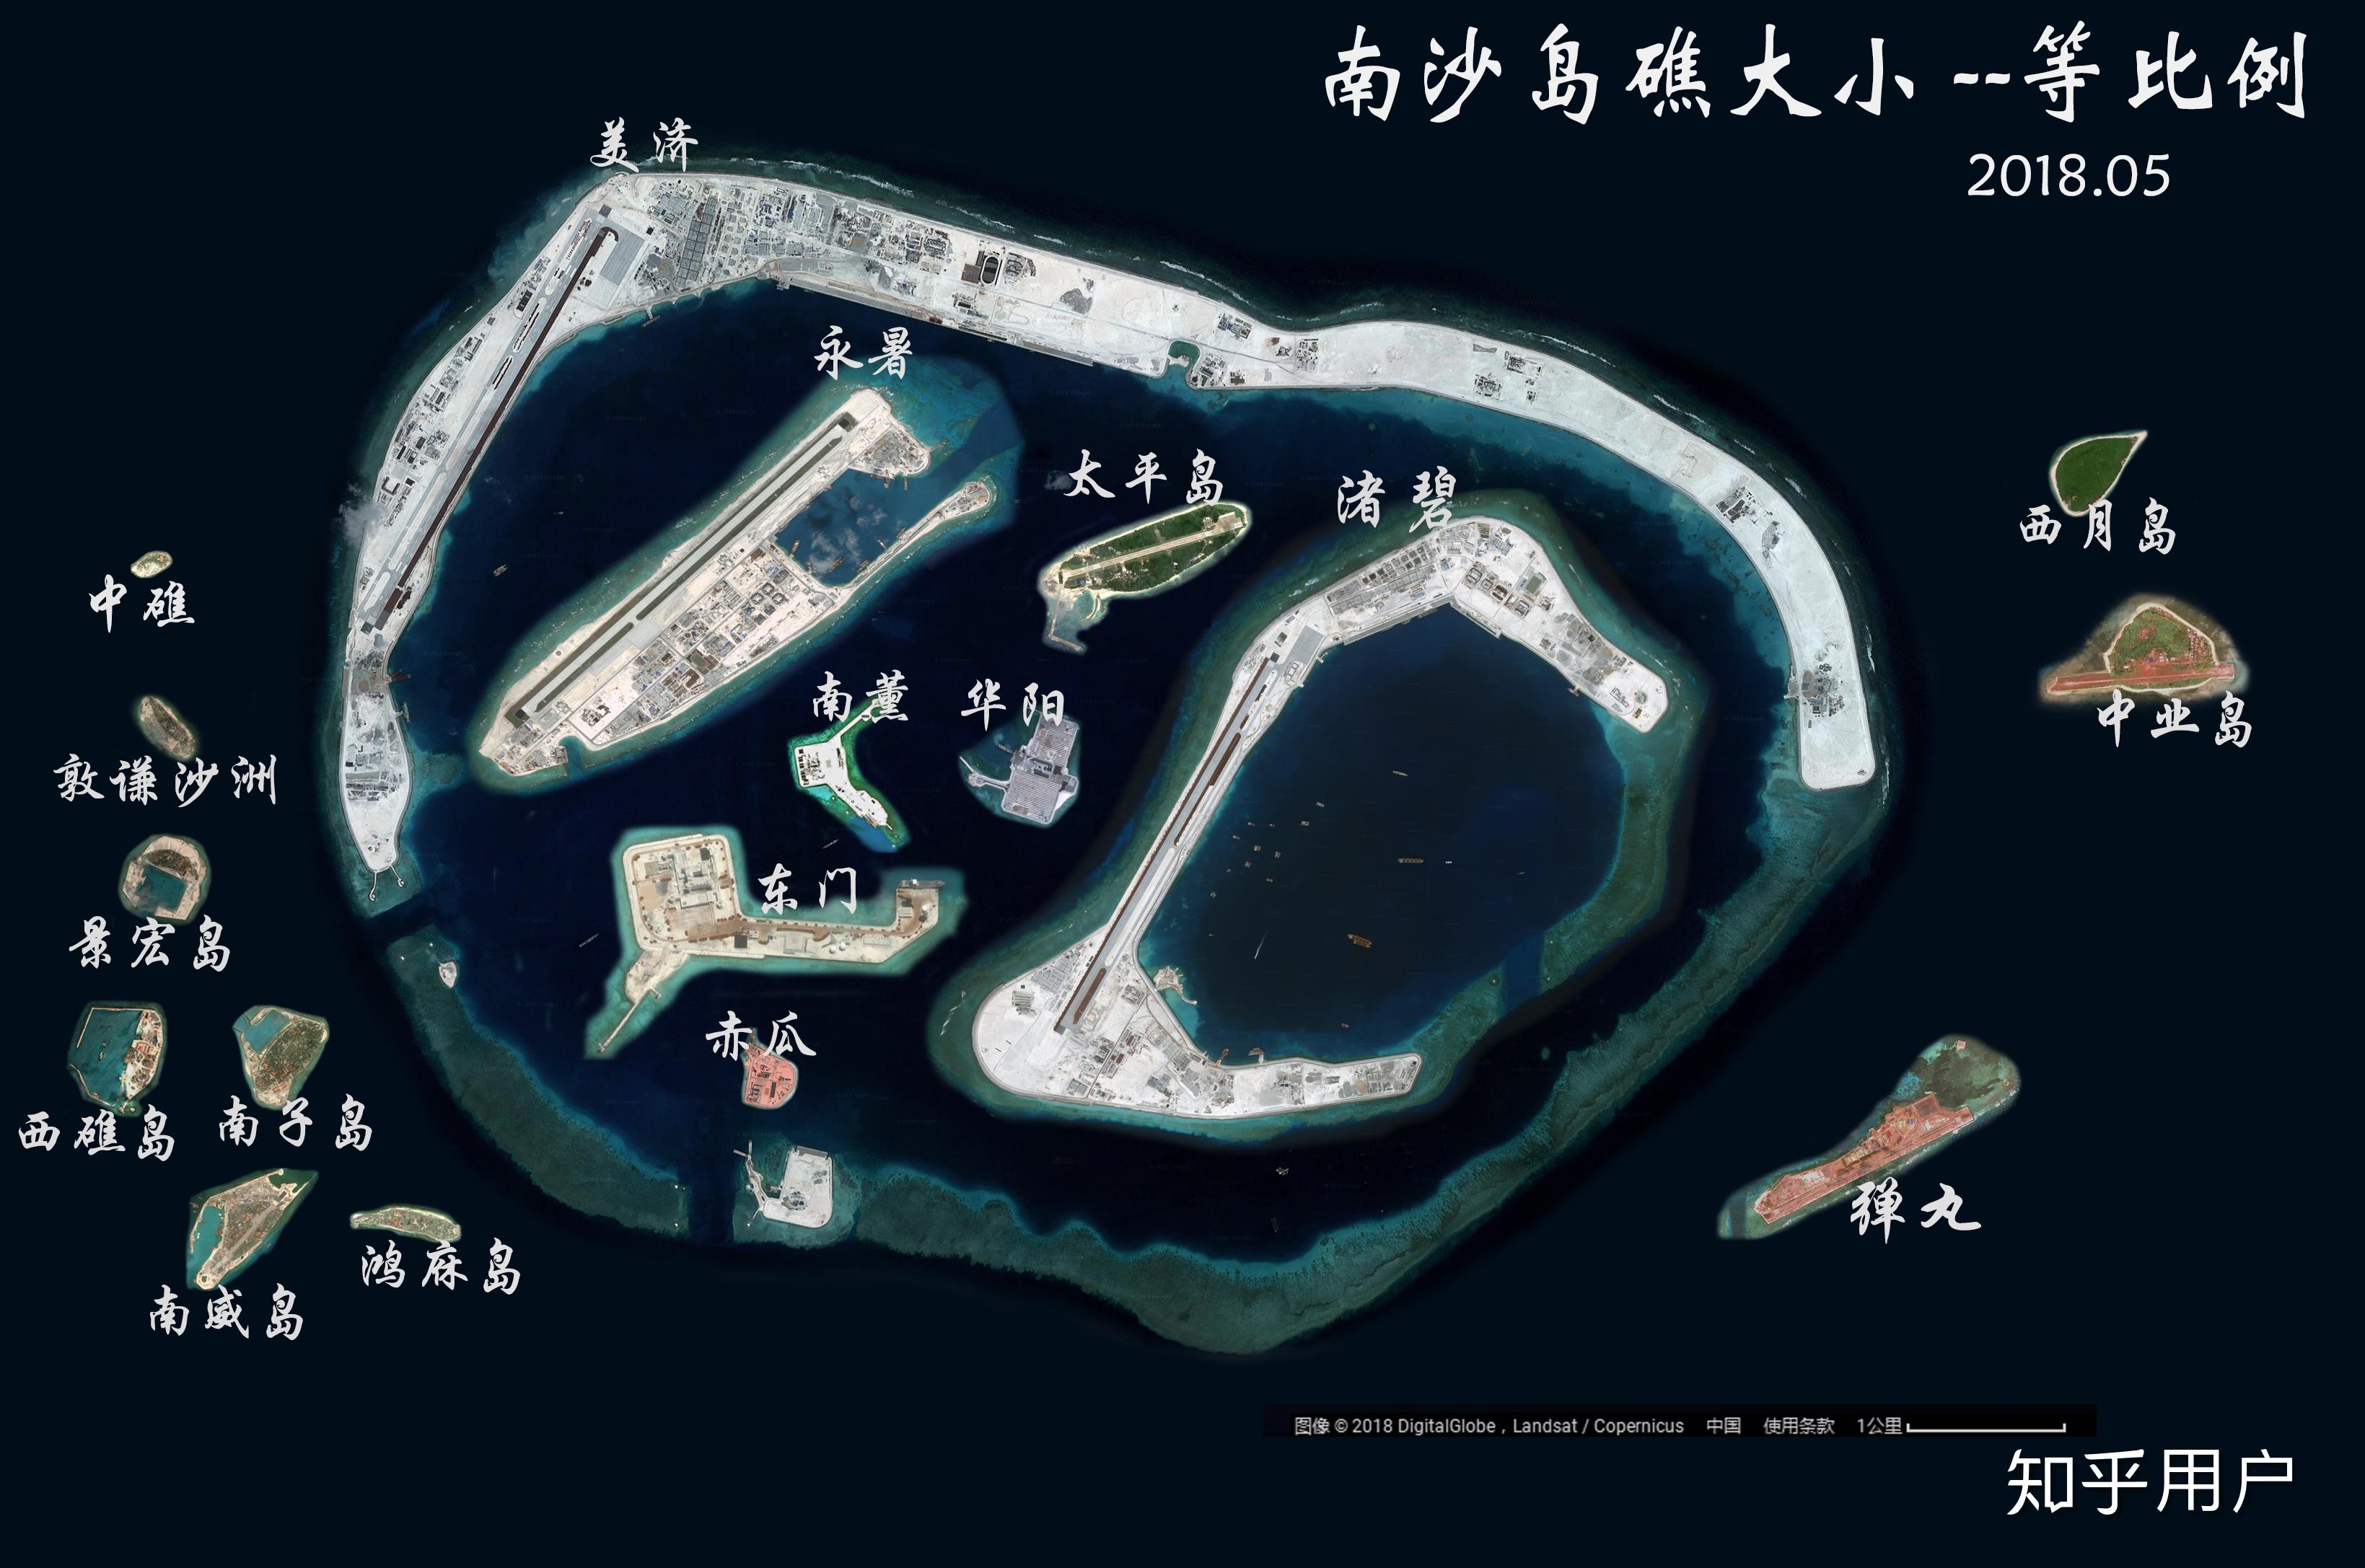 中国填海建岛是流氓行为吗? 